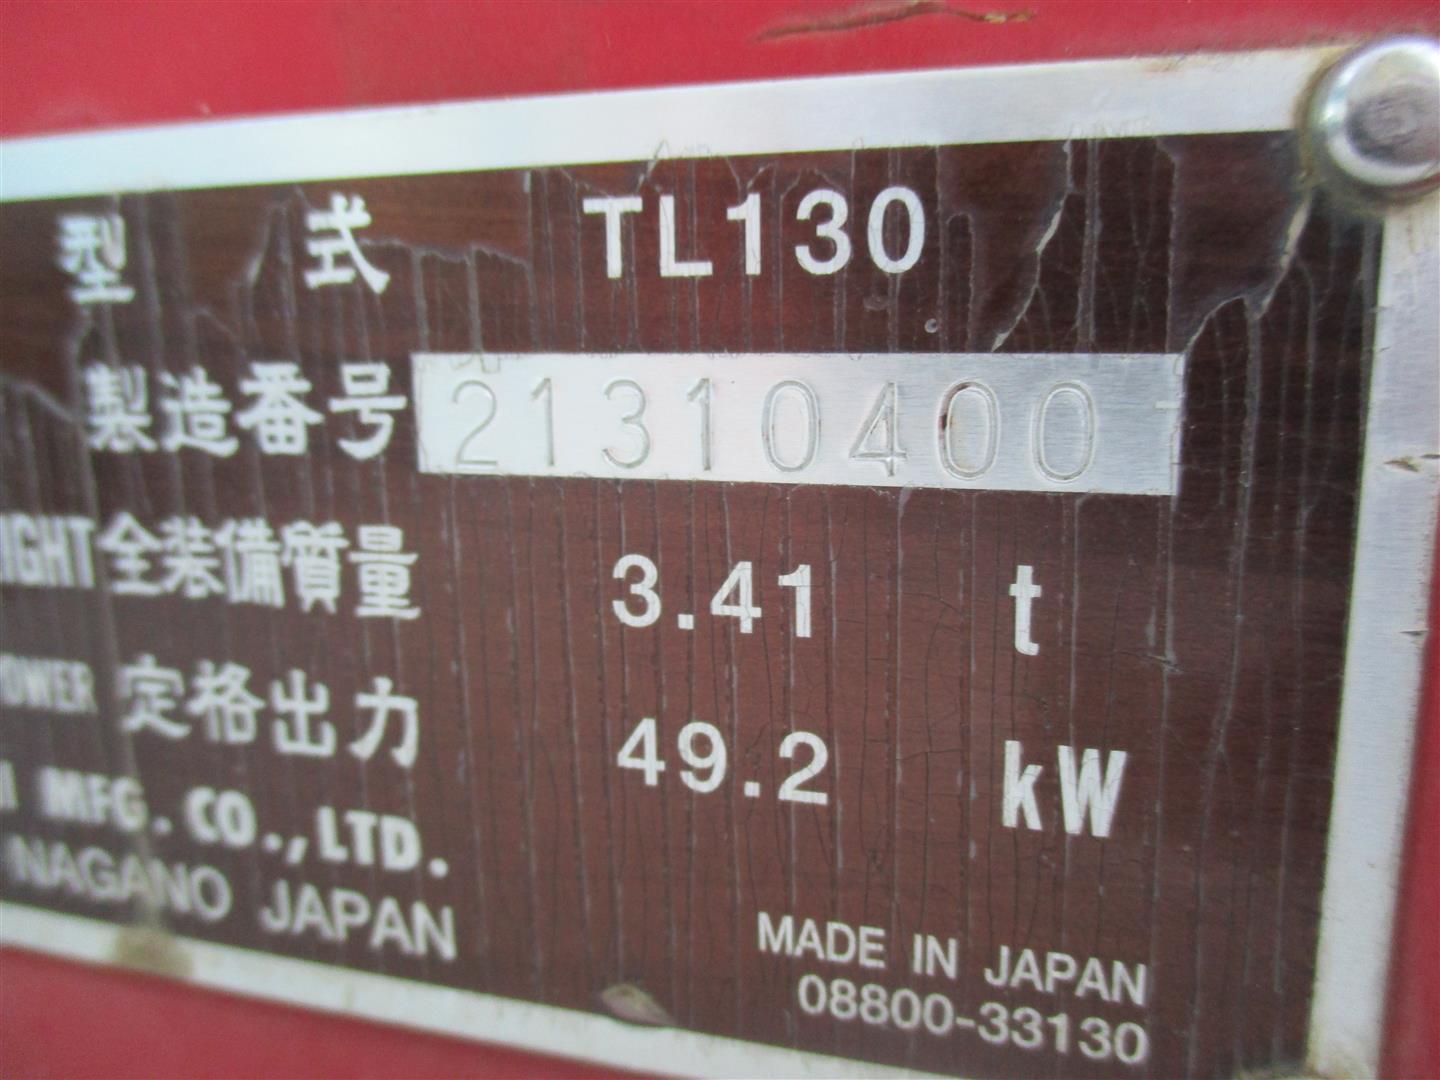 Takeuchi TL130